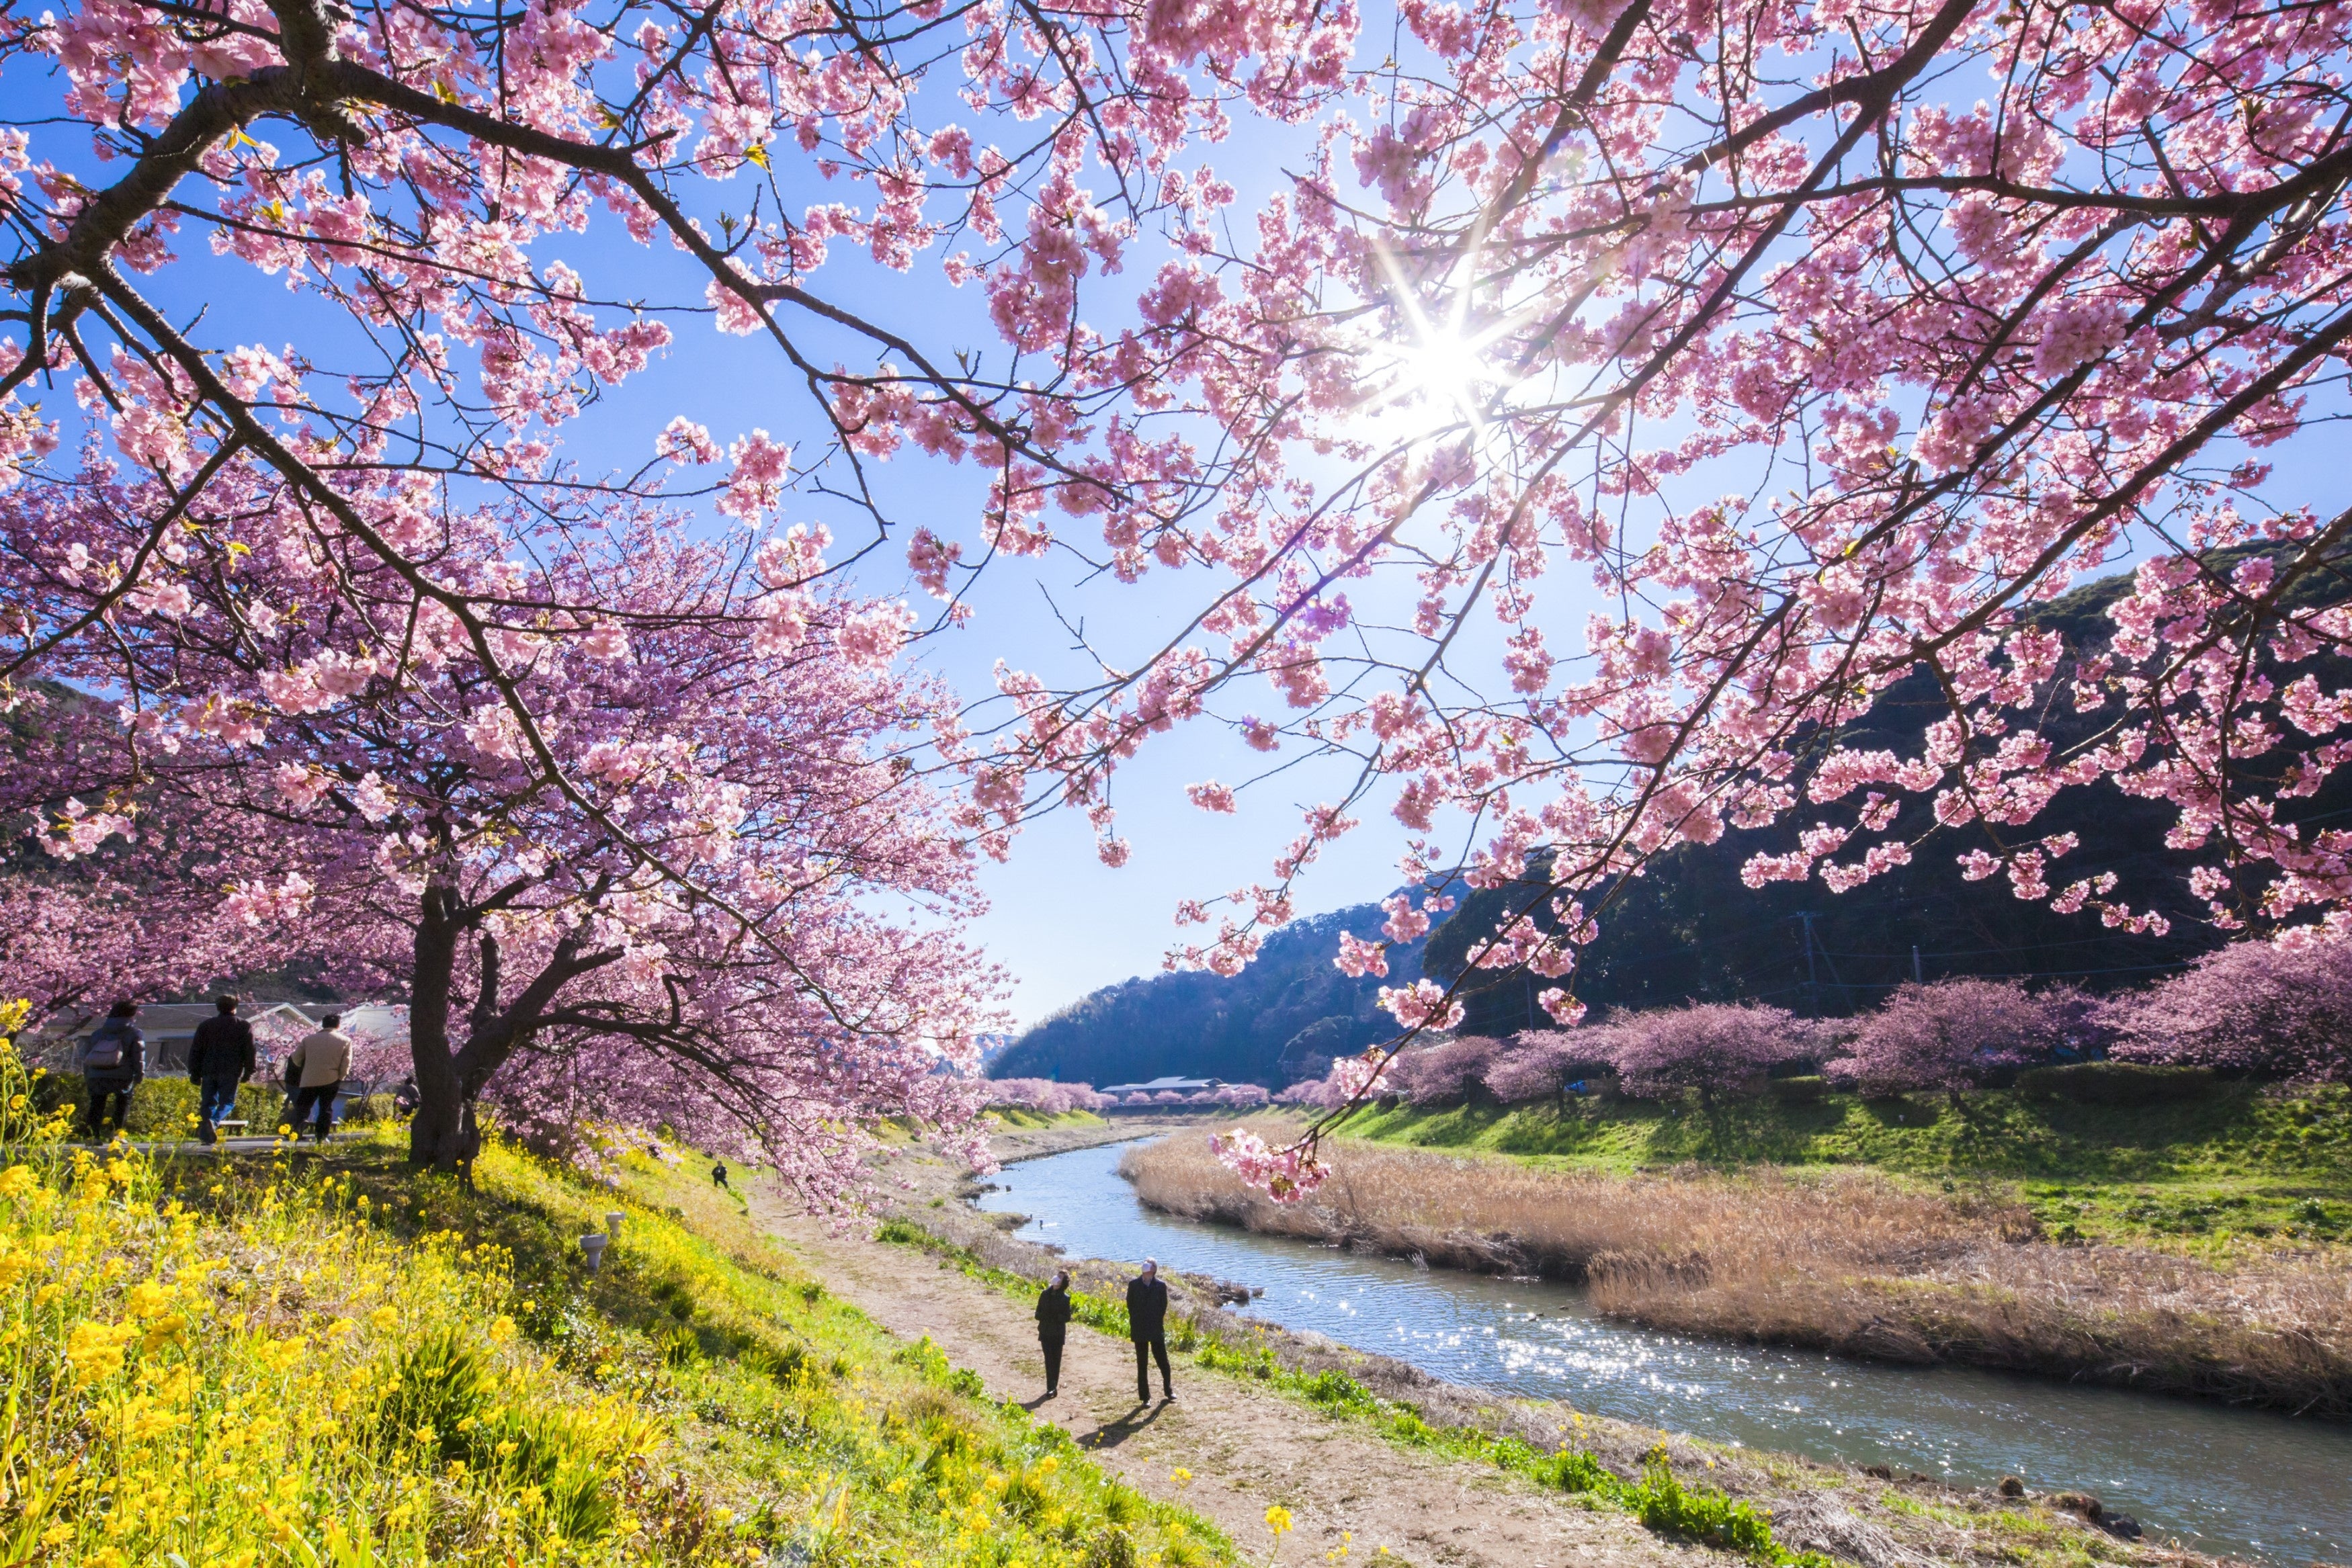 「みなみの桜と菜の花まつり」